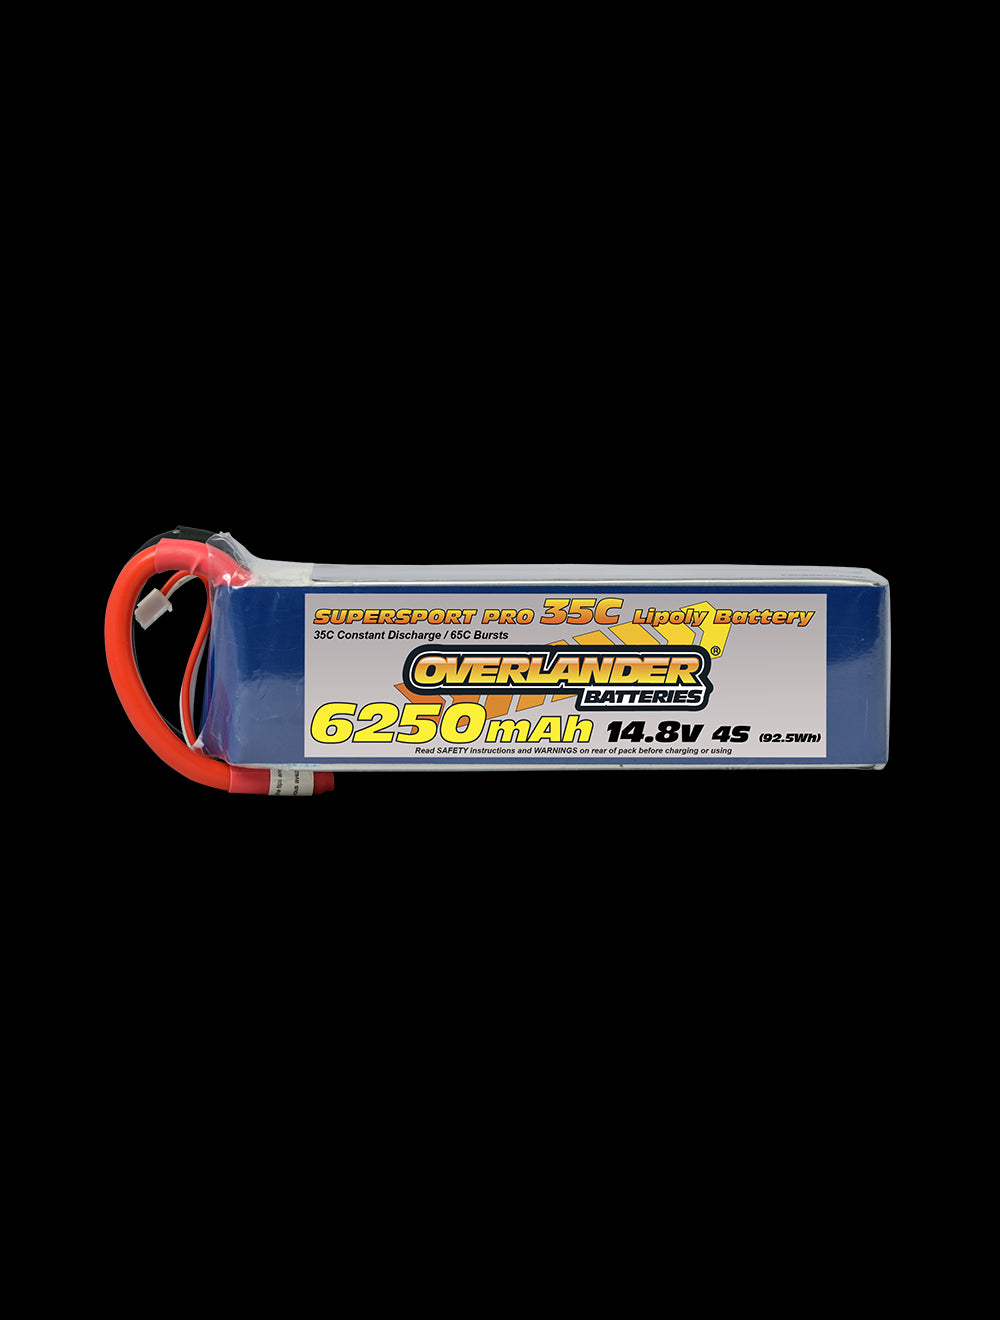 Overlander 6250mAh 14.8V 4S 35C Supersport Pro LiPo Battery - XT90 Connector 2770